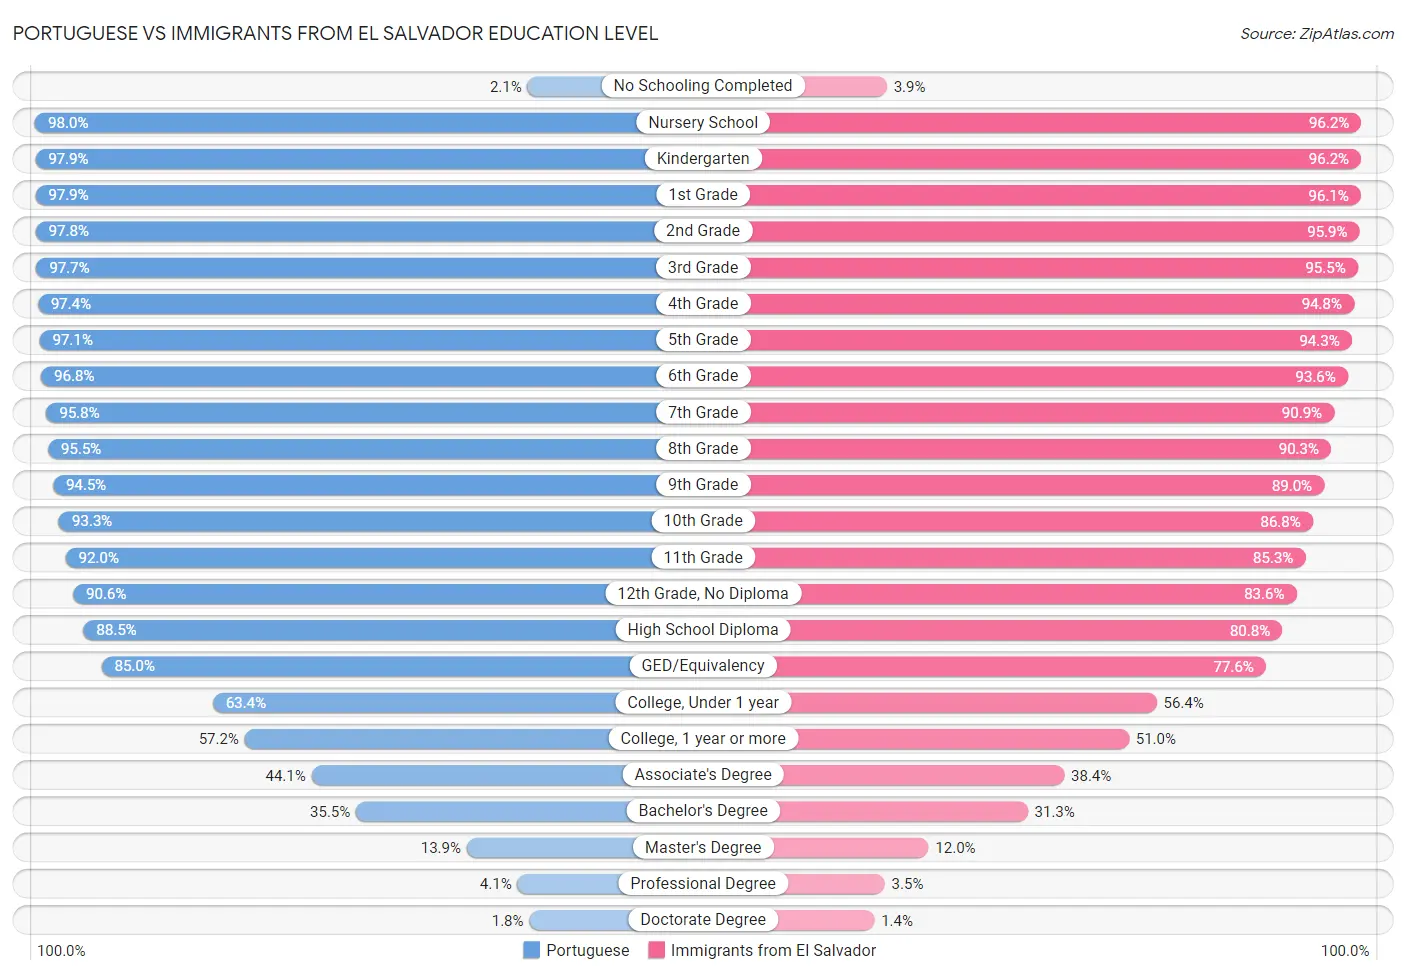 Portuguese vs Immigrants from El Salvador Education Level